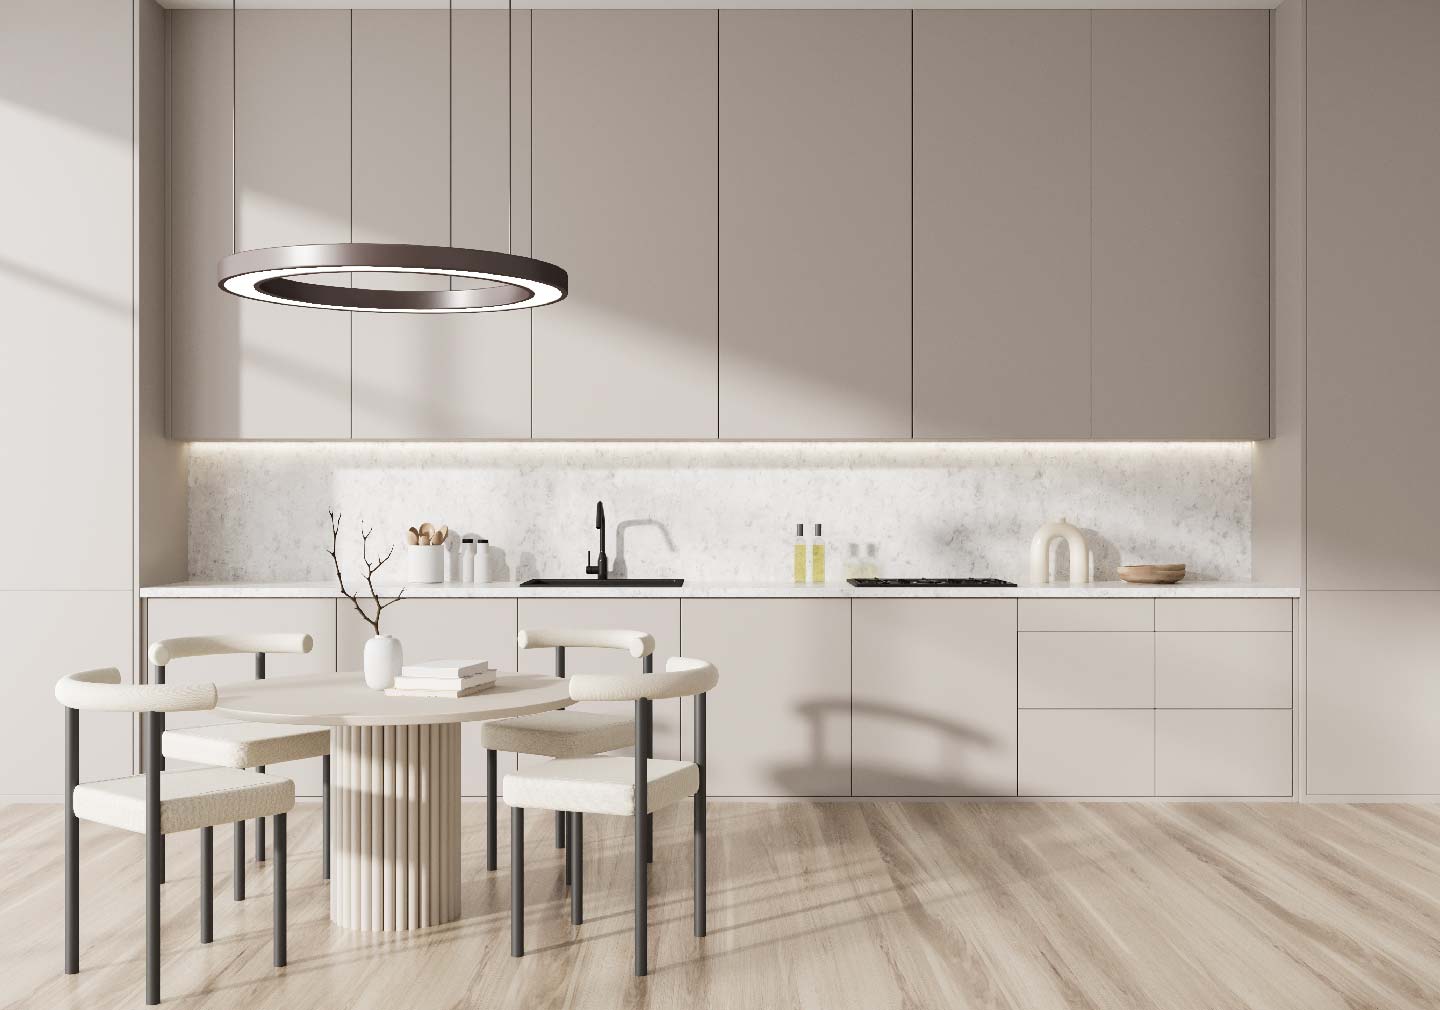 minimalist interior design - with open kitchen